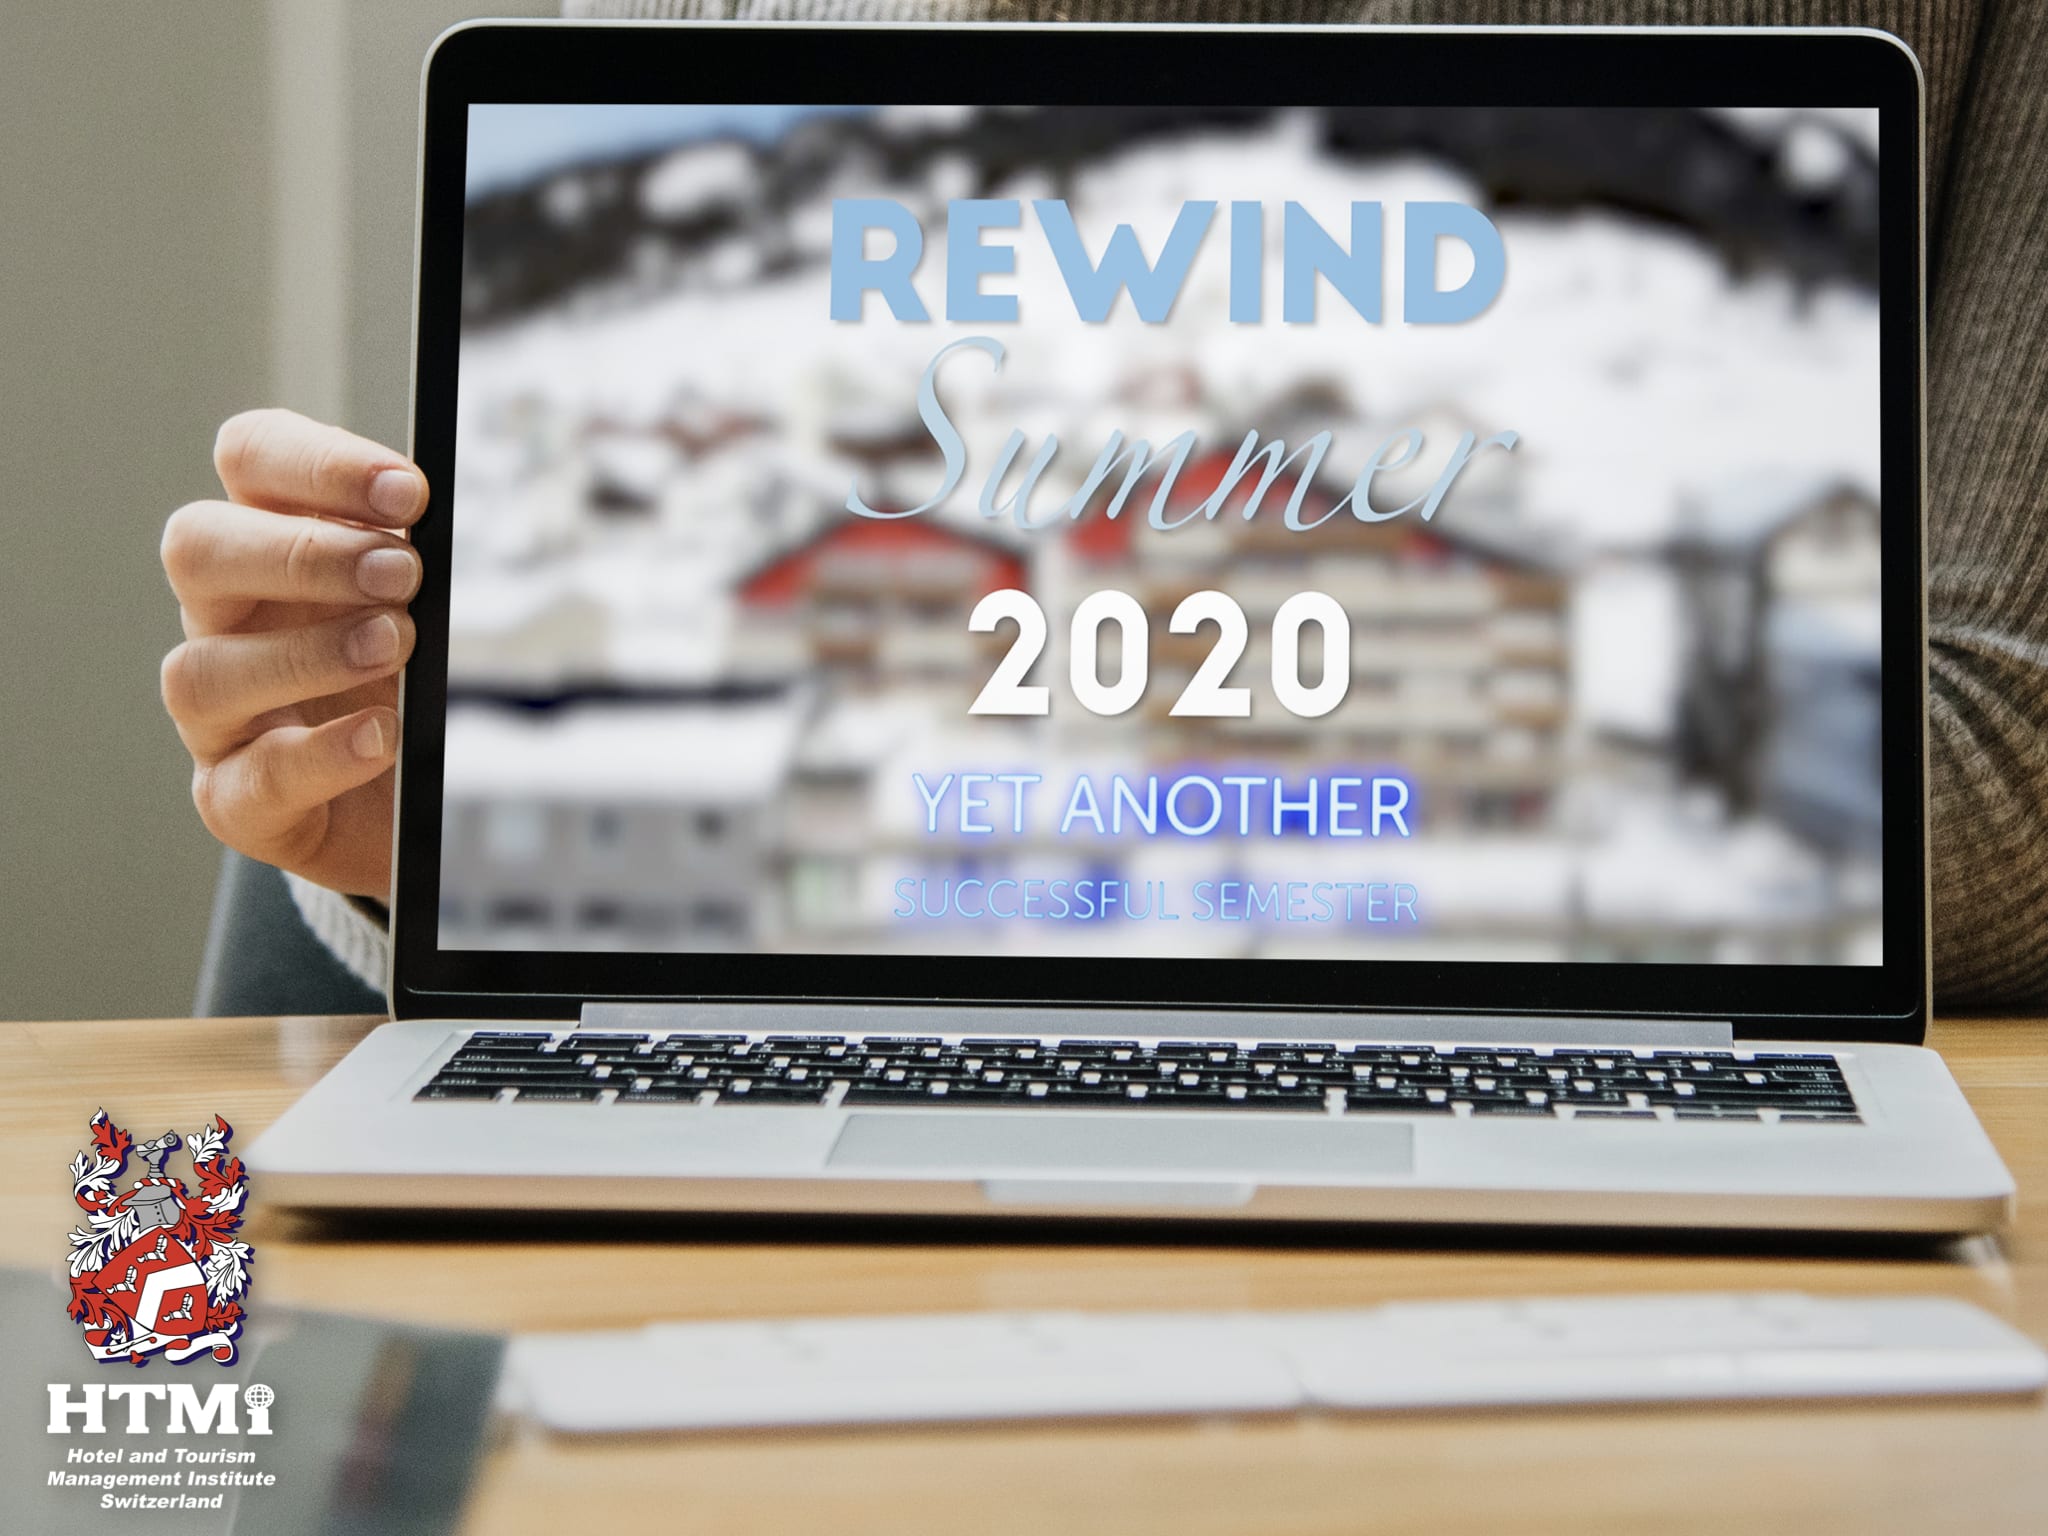 HTMi Switzerland 2020 Rewind Video